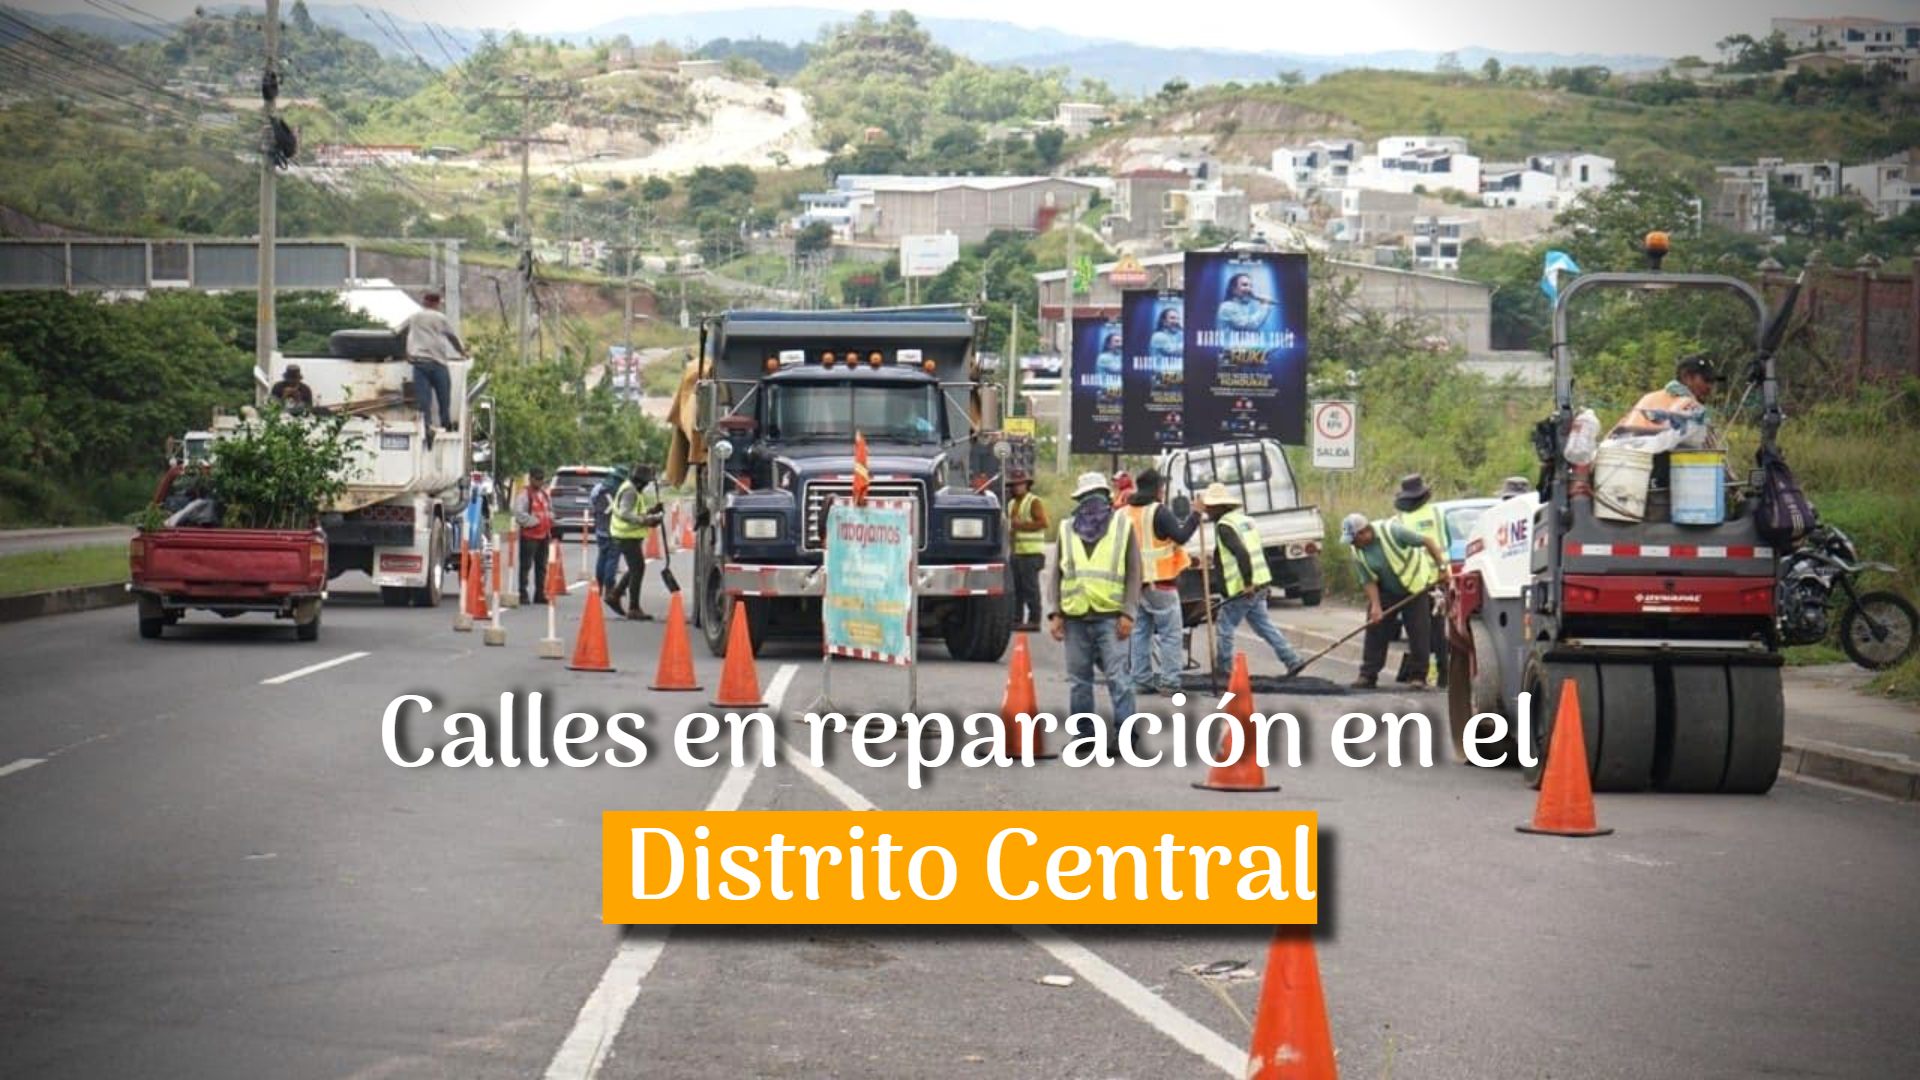 ¡Tome rutas alternas! AMDC anuncia calles en reparación en el Distrito Central